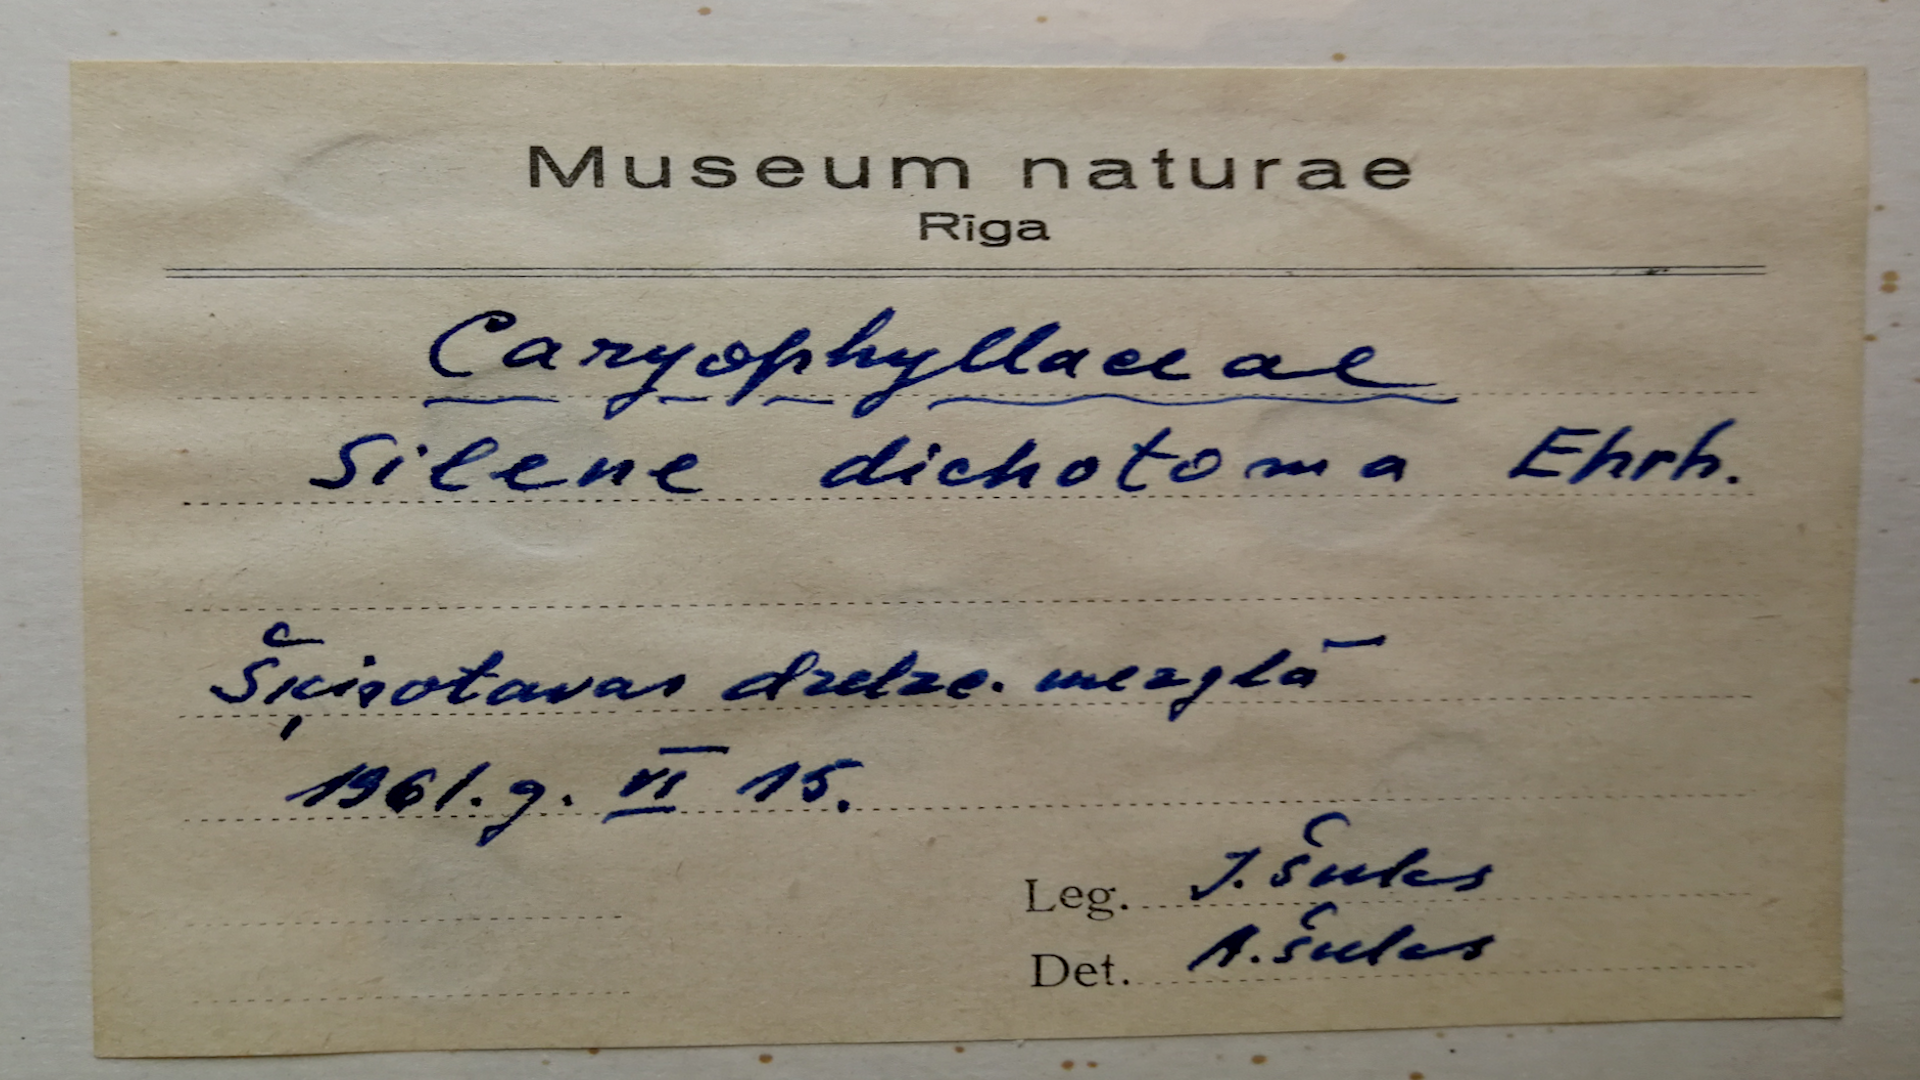 Žuburotās plaukšķenes eksponāta etiķete, kas 1961. gadā ievākta Šķirotavas Stacijā. Ievācis I. Šulcs, sugu noteicis A. Šulcs